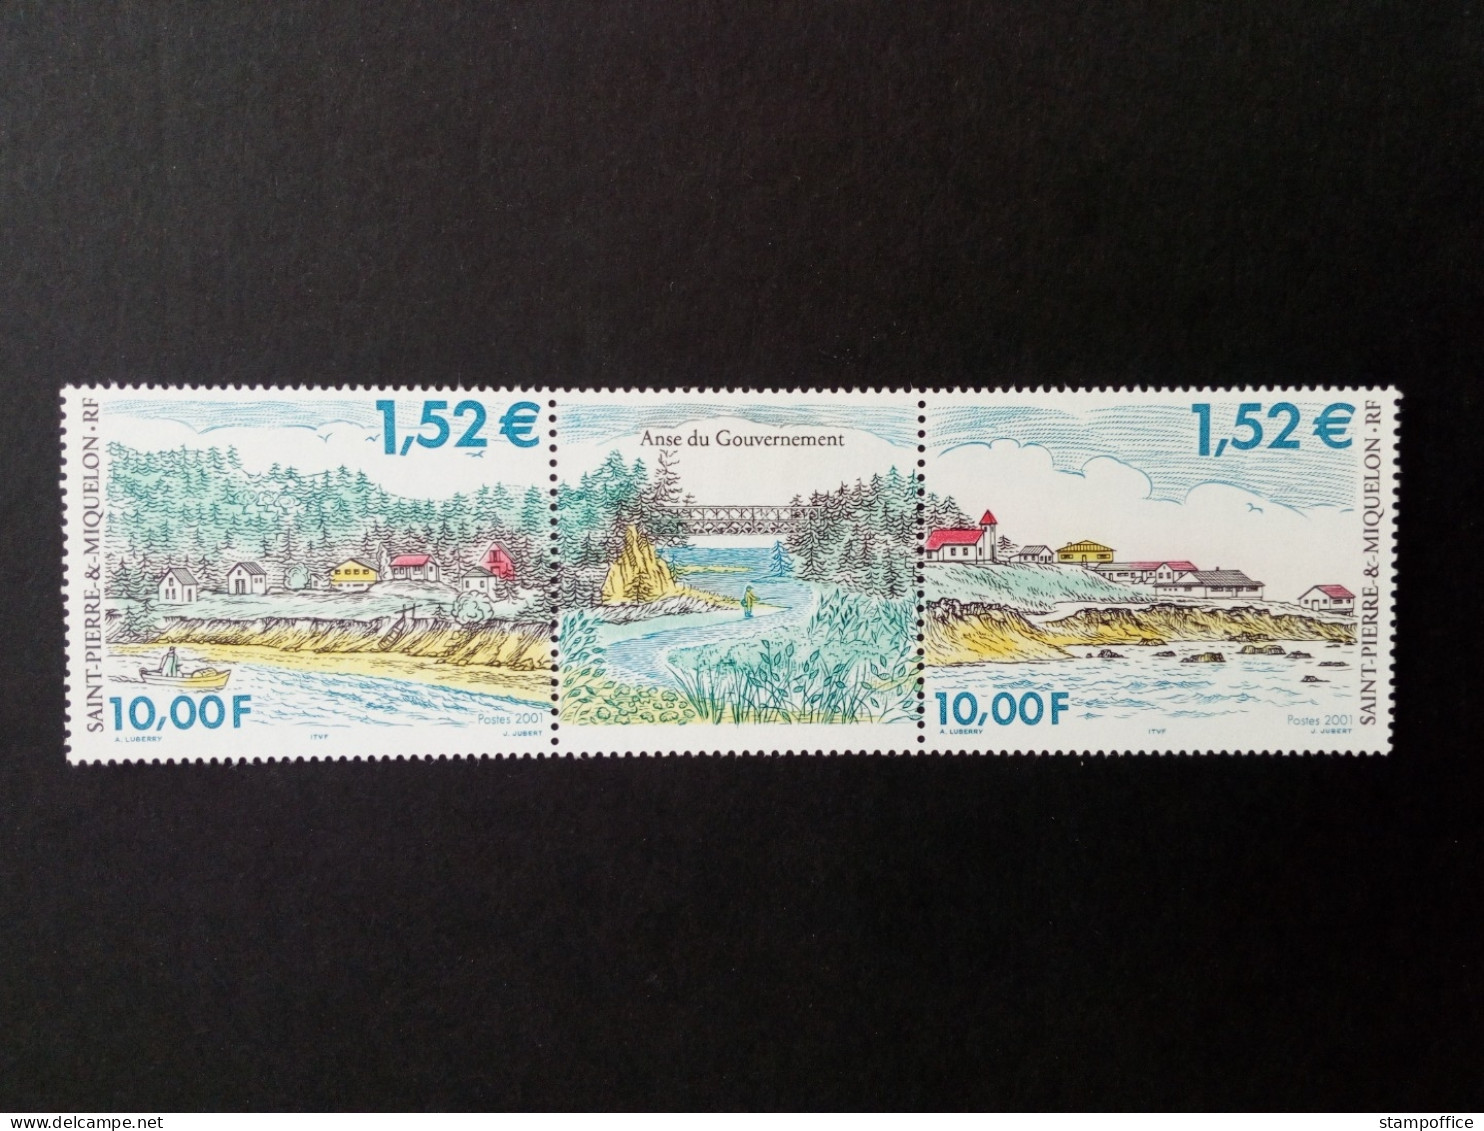 SAINT-PIERRE ET MIQUELON MI-NR. 836-837 POSTFRISCH(MINT) ZD LANDSCHAFTEN 2001 - Unused Stamps